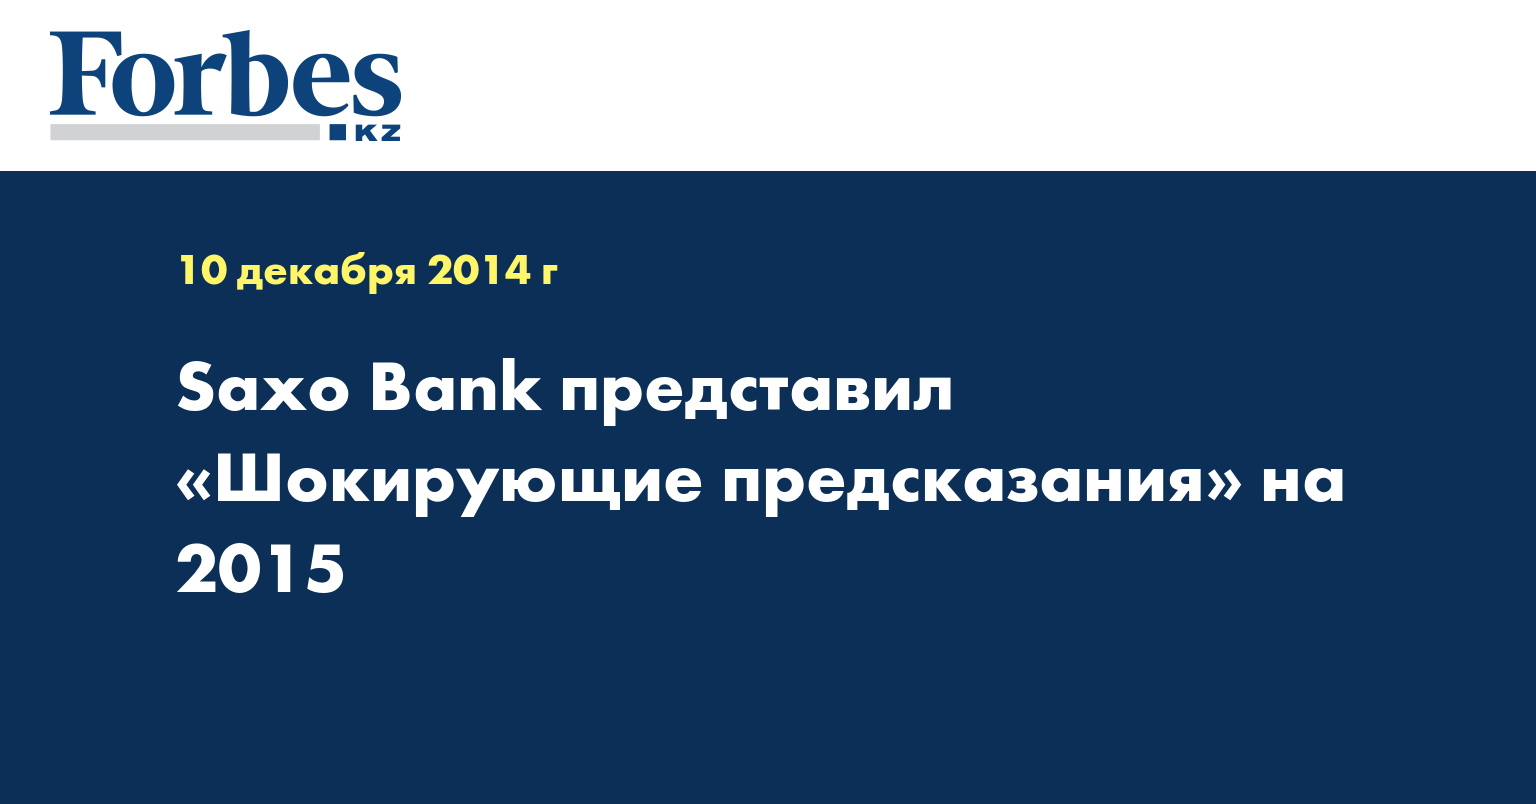 Saxo Bank представил «Шокирующие предсказания» на 2015